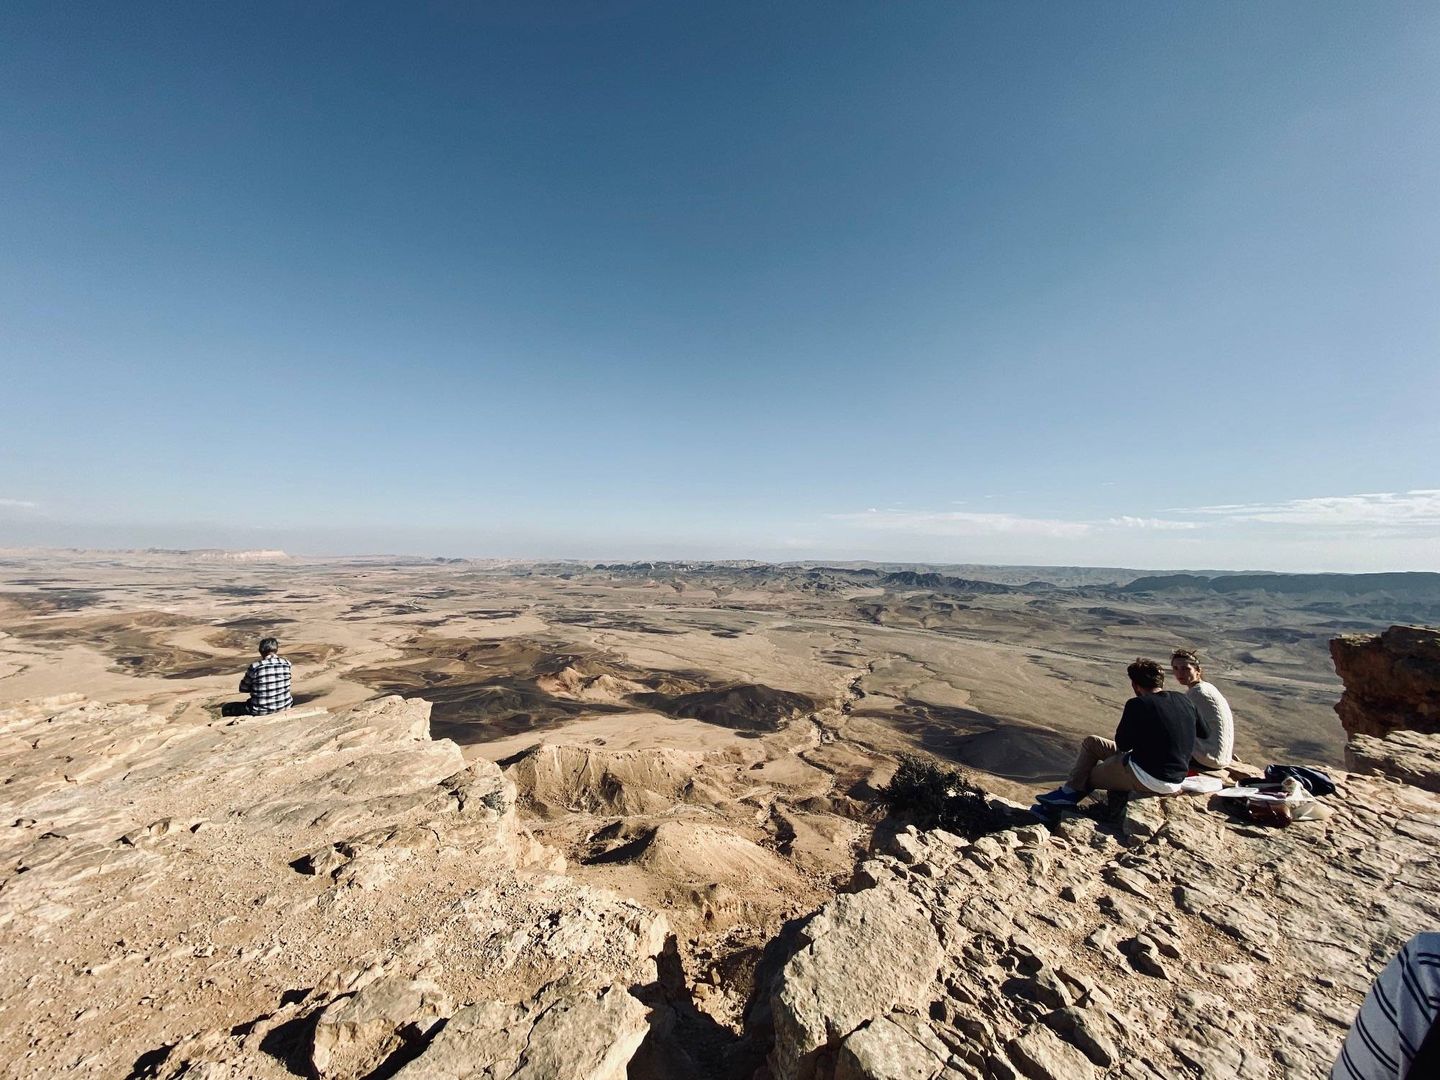  Varios turistas observan las vistas desde el cráter Ramon. Foto: C.S